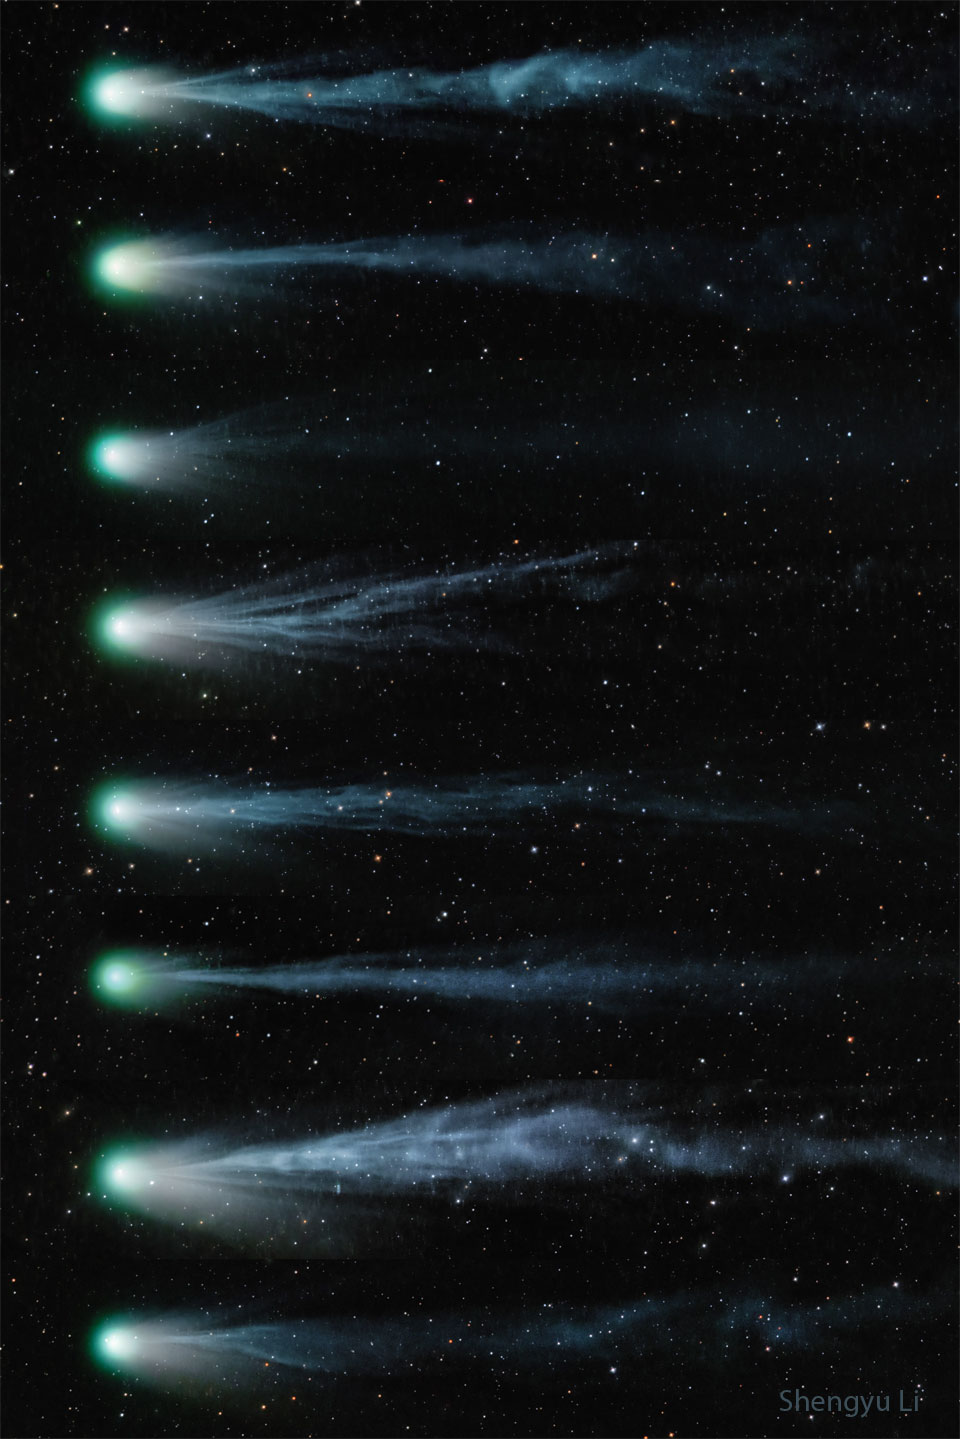 Comet12pTails_ShengyuLi_960.jpg